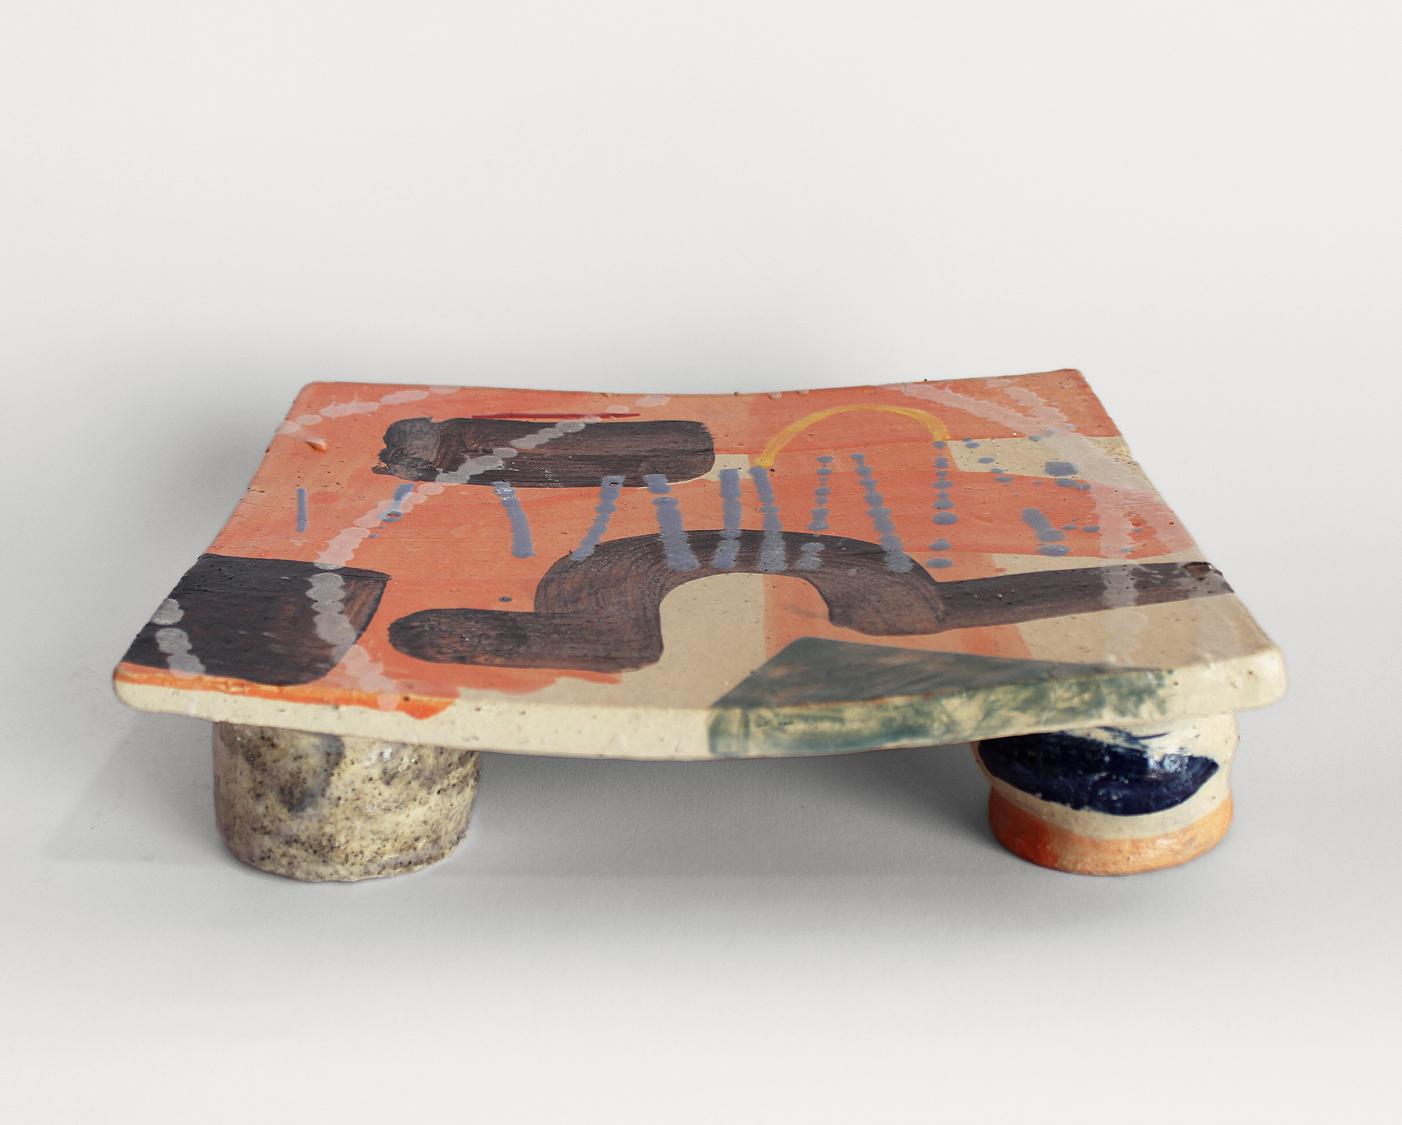 Terre sonore - Shun Kadohashi 

Bunte freie Keramik Teller Mittelstück Japanische Keramik

28 x 24 x 7,5 cm
Sandstein
Hergestellt in Japan
Einzigartiges Stück
2023

Dieses Werk wird mit einem Echtheitszertifikat geliefert.

Shun Kadohashi ist ein